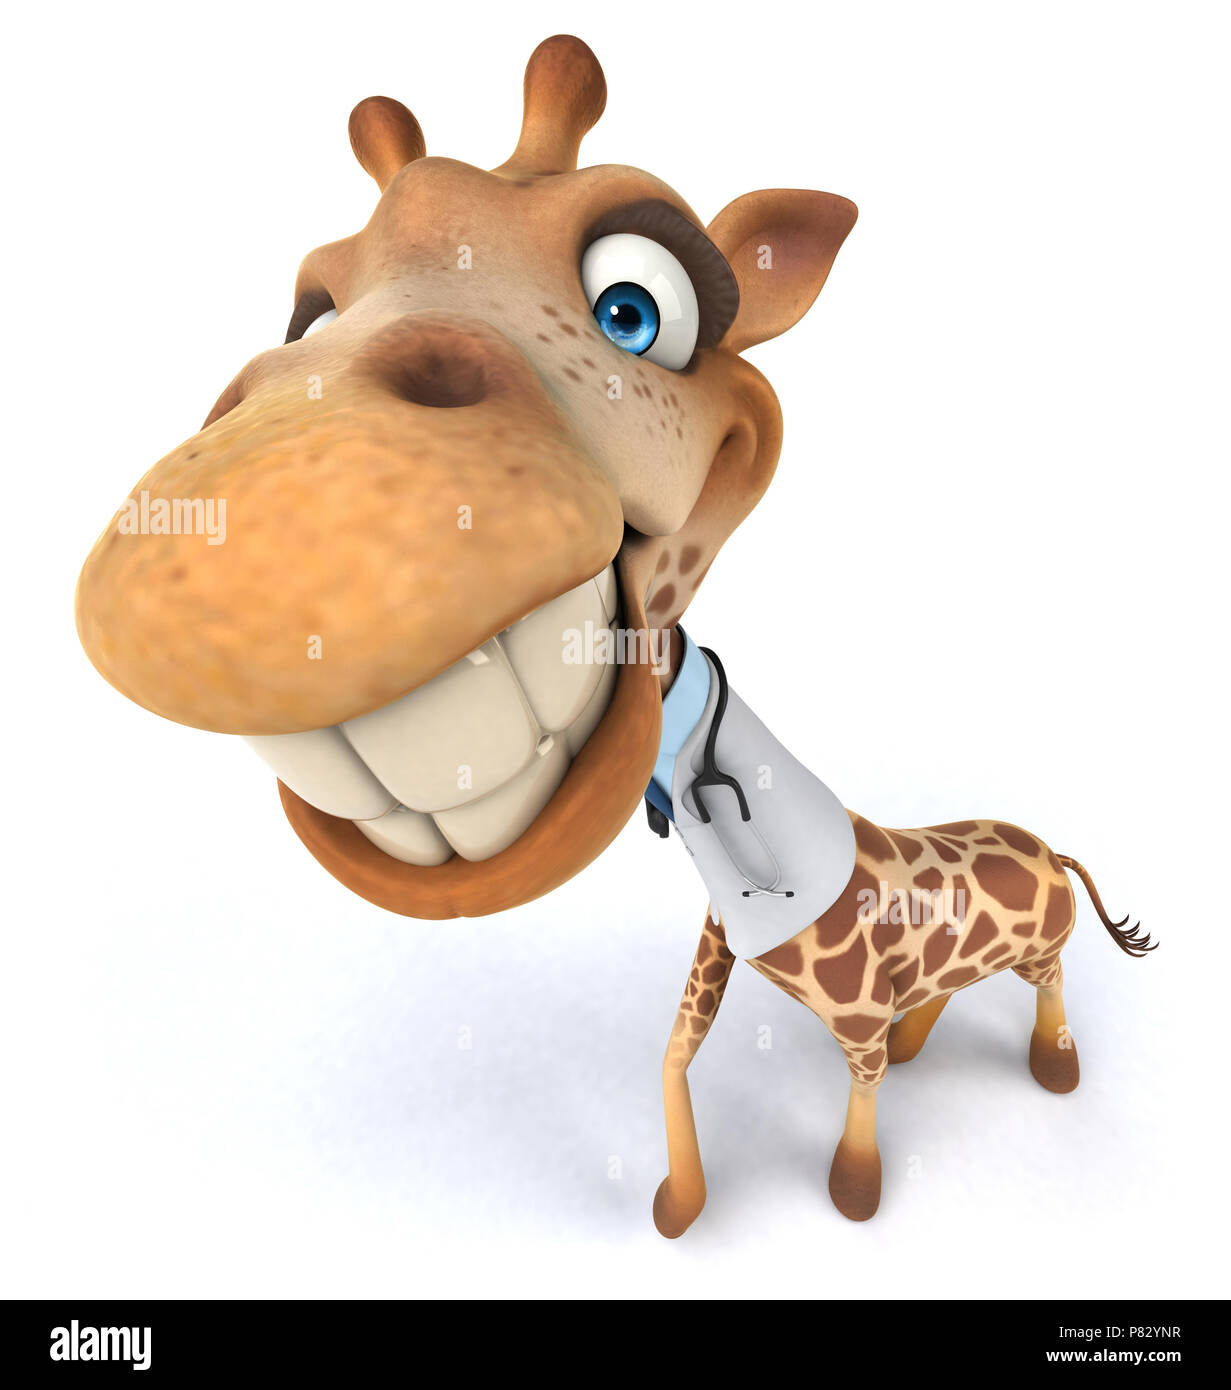 Fun giraffe Stock Photo